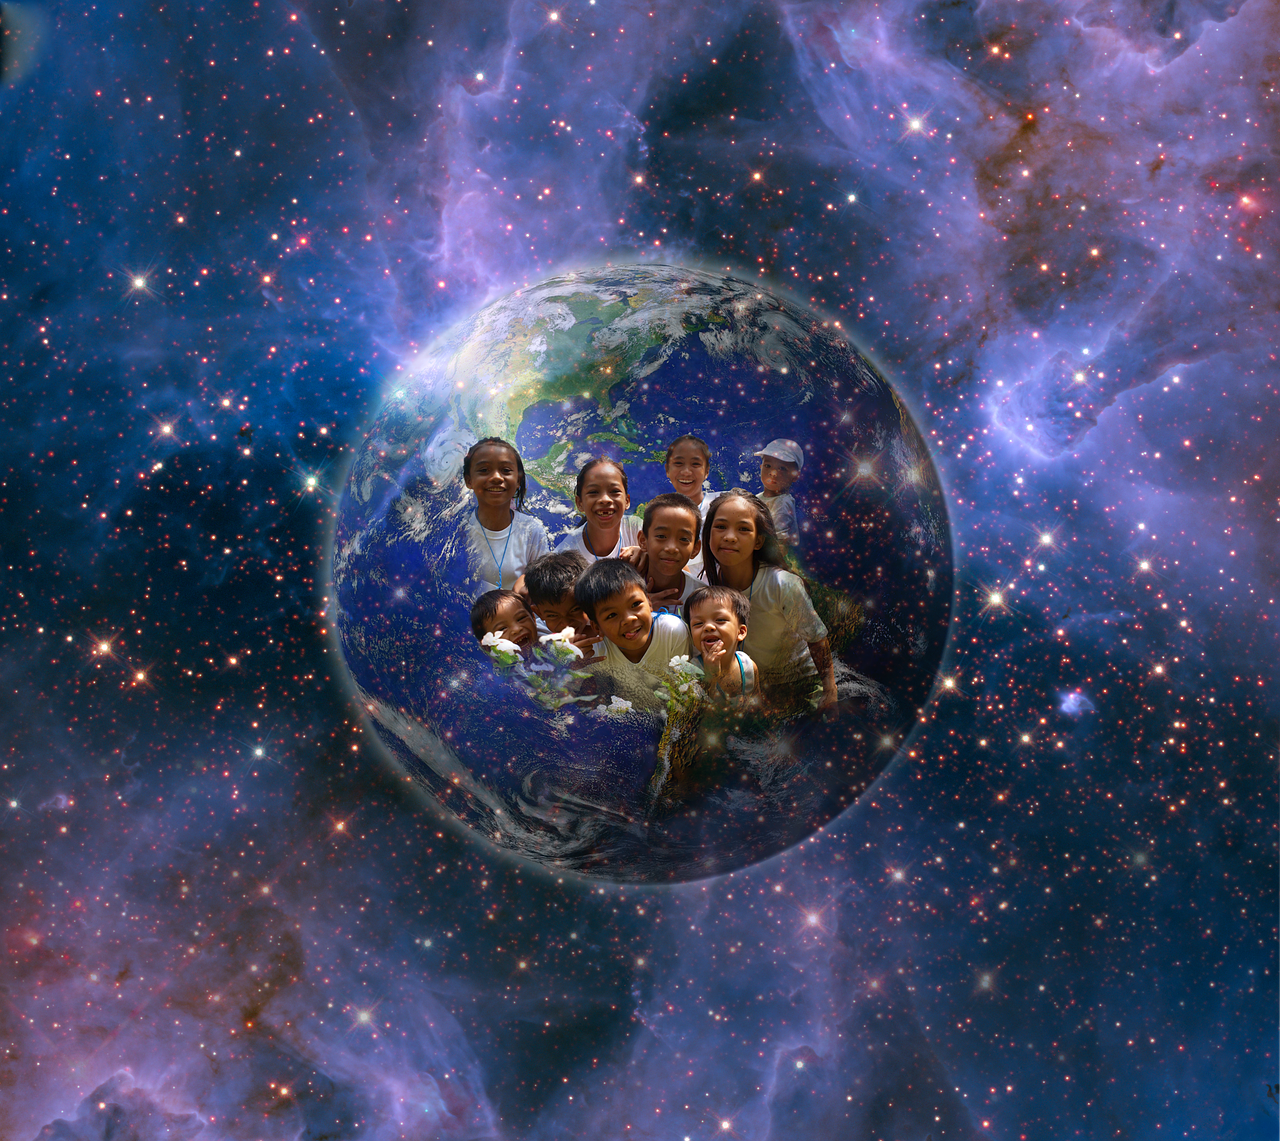 Žemė, Mėlyna Planeta, Gaublys, Gaia, Planeta, Žmogus, Vaikai, Vaikų Grupė, Žmonių Grupė, Asmeninis